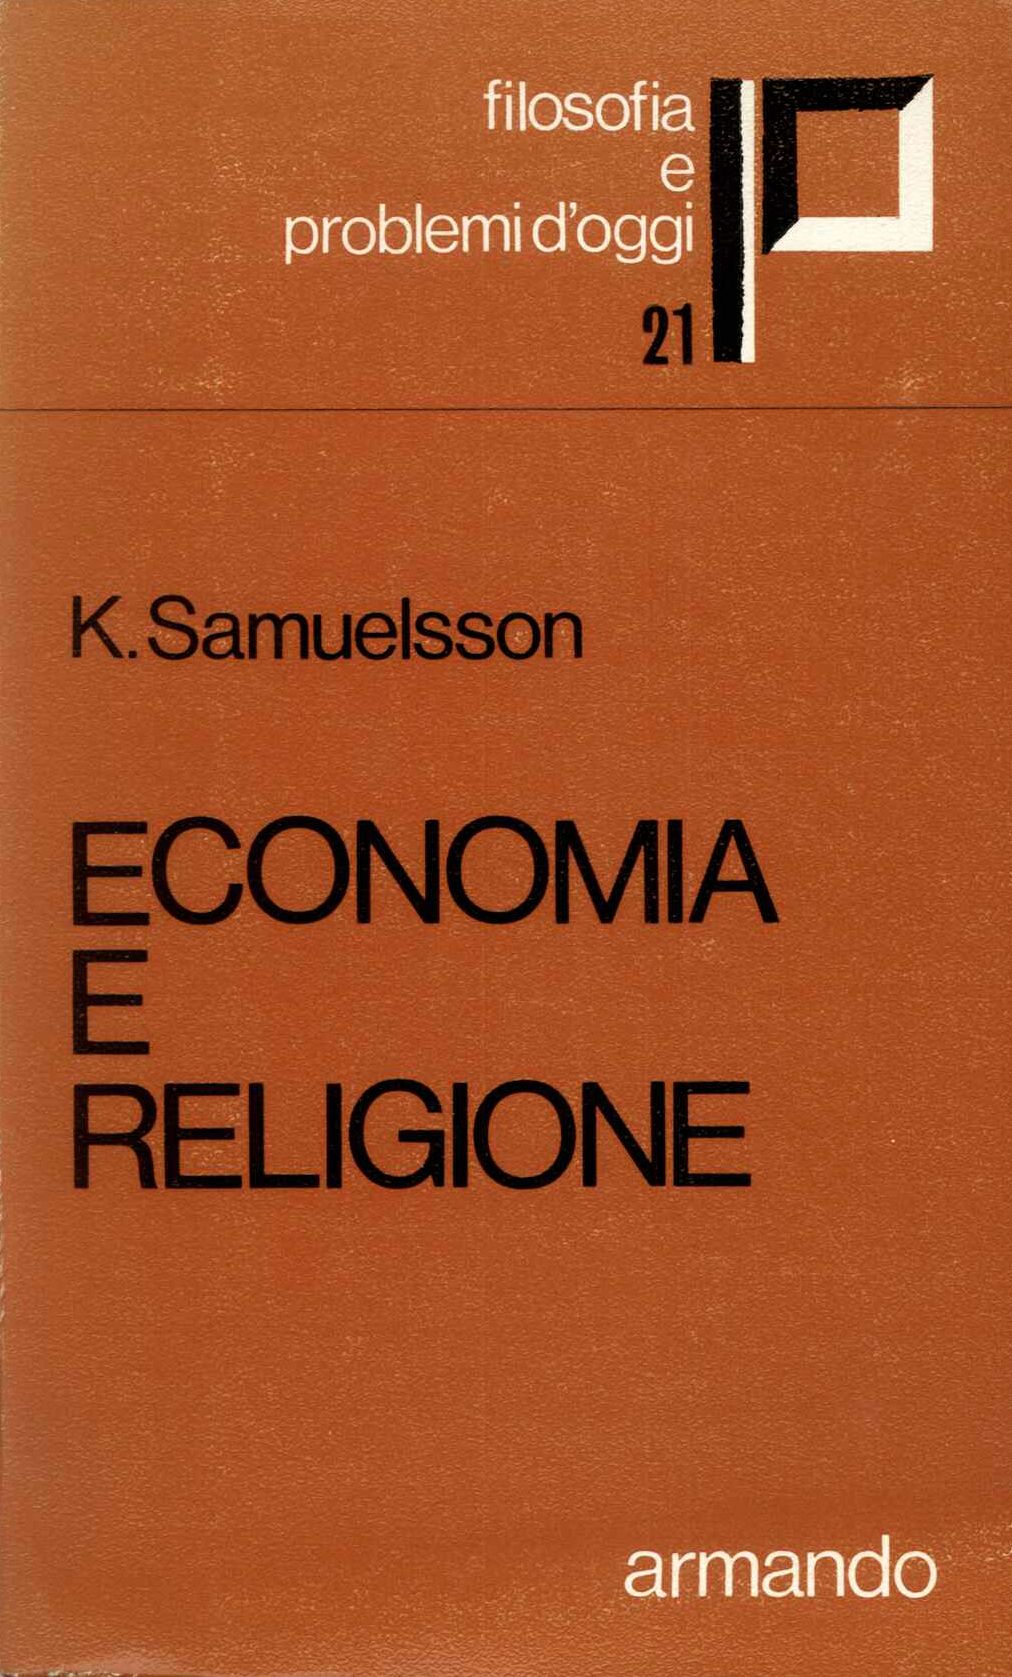 Economia e religione